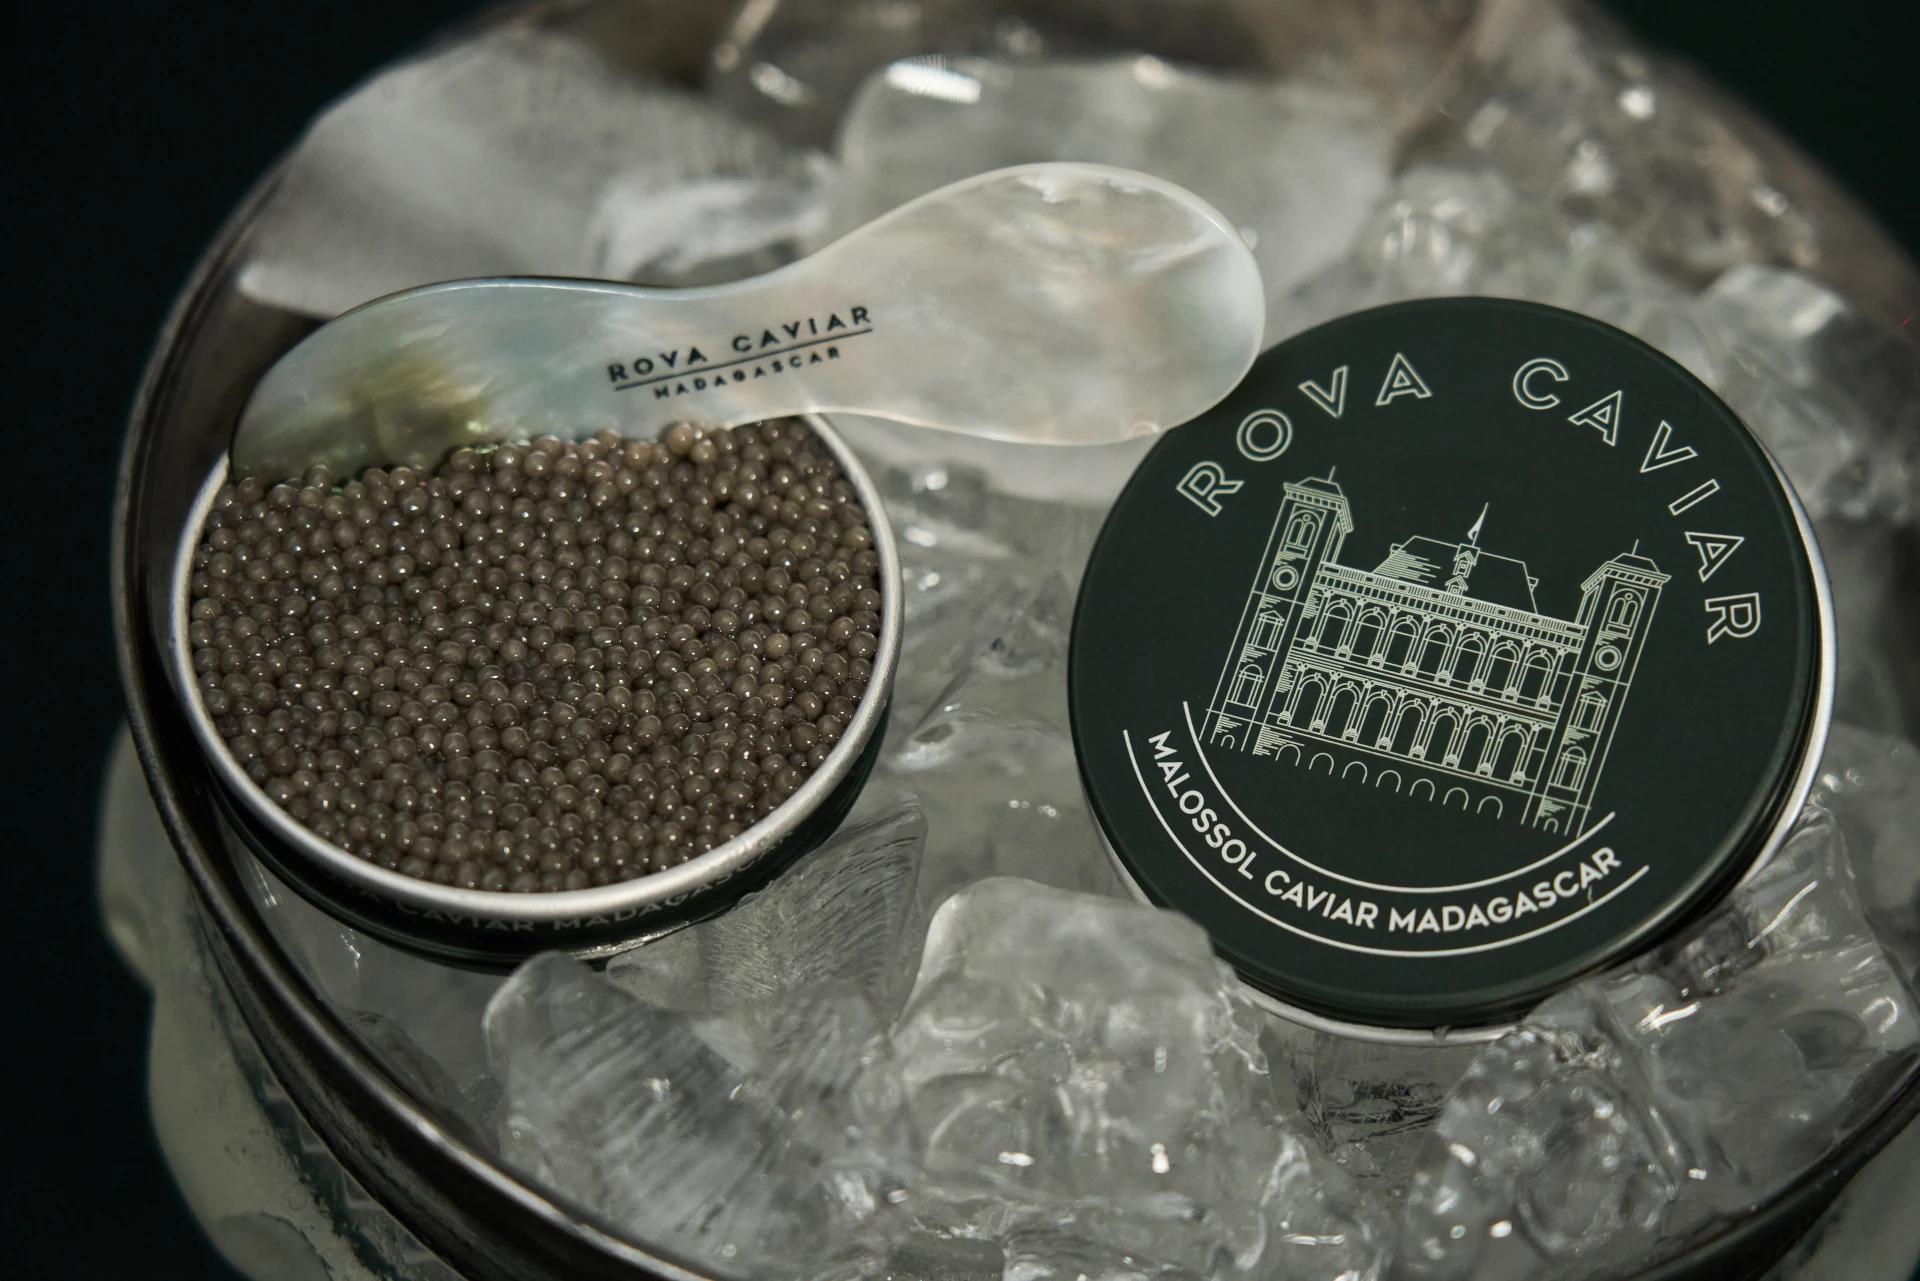 Boîte de caviar Shipova ouverte avec couvercle et cuillère de dégustation